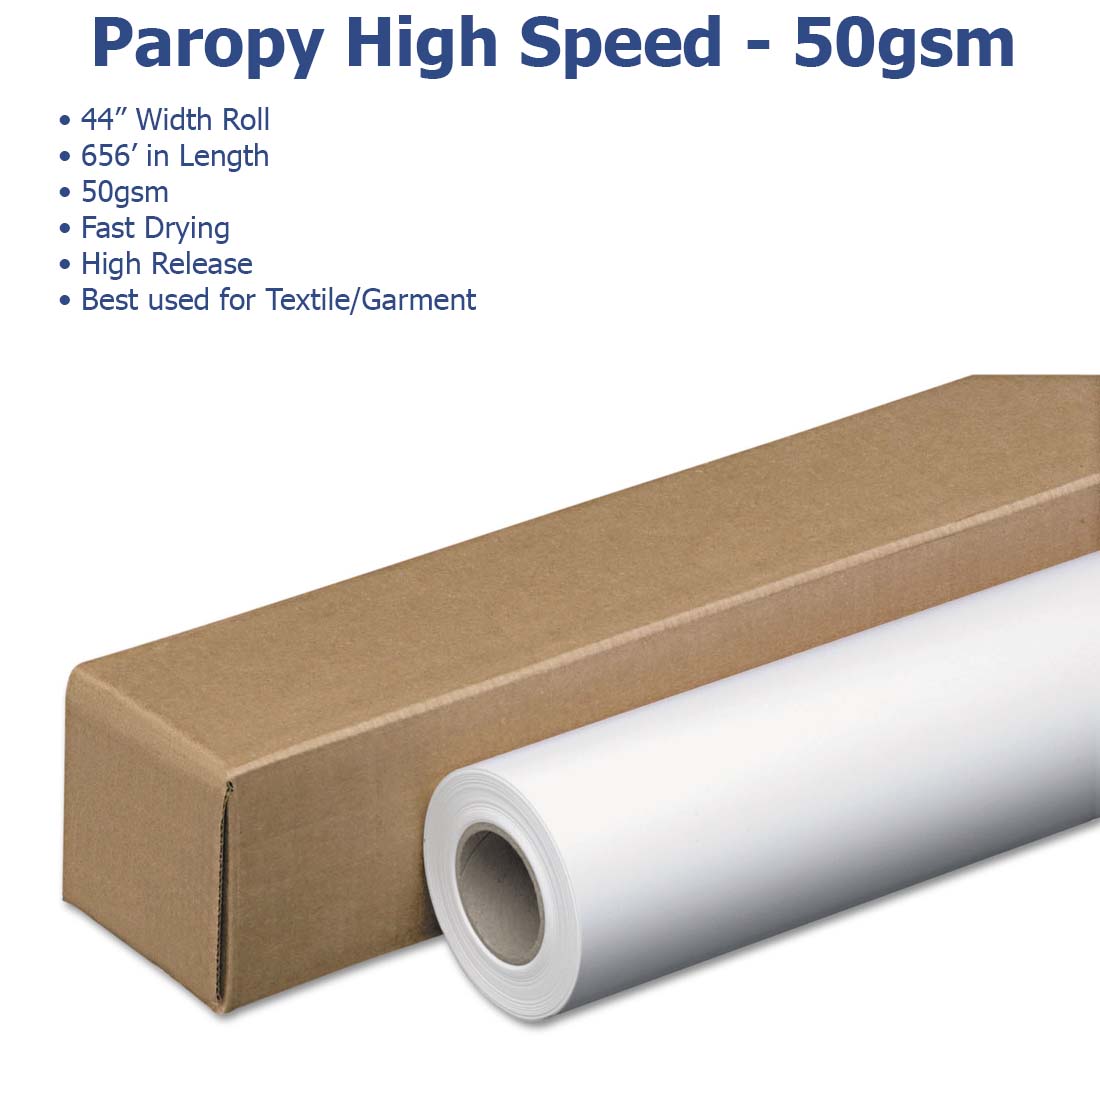 Paropy™ Sublimation Paper - 50gsm - Joto Imaging Supplies Canada